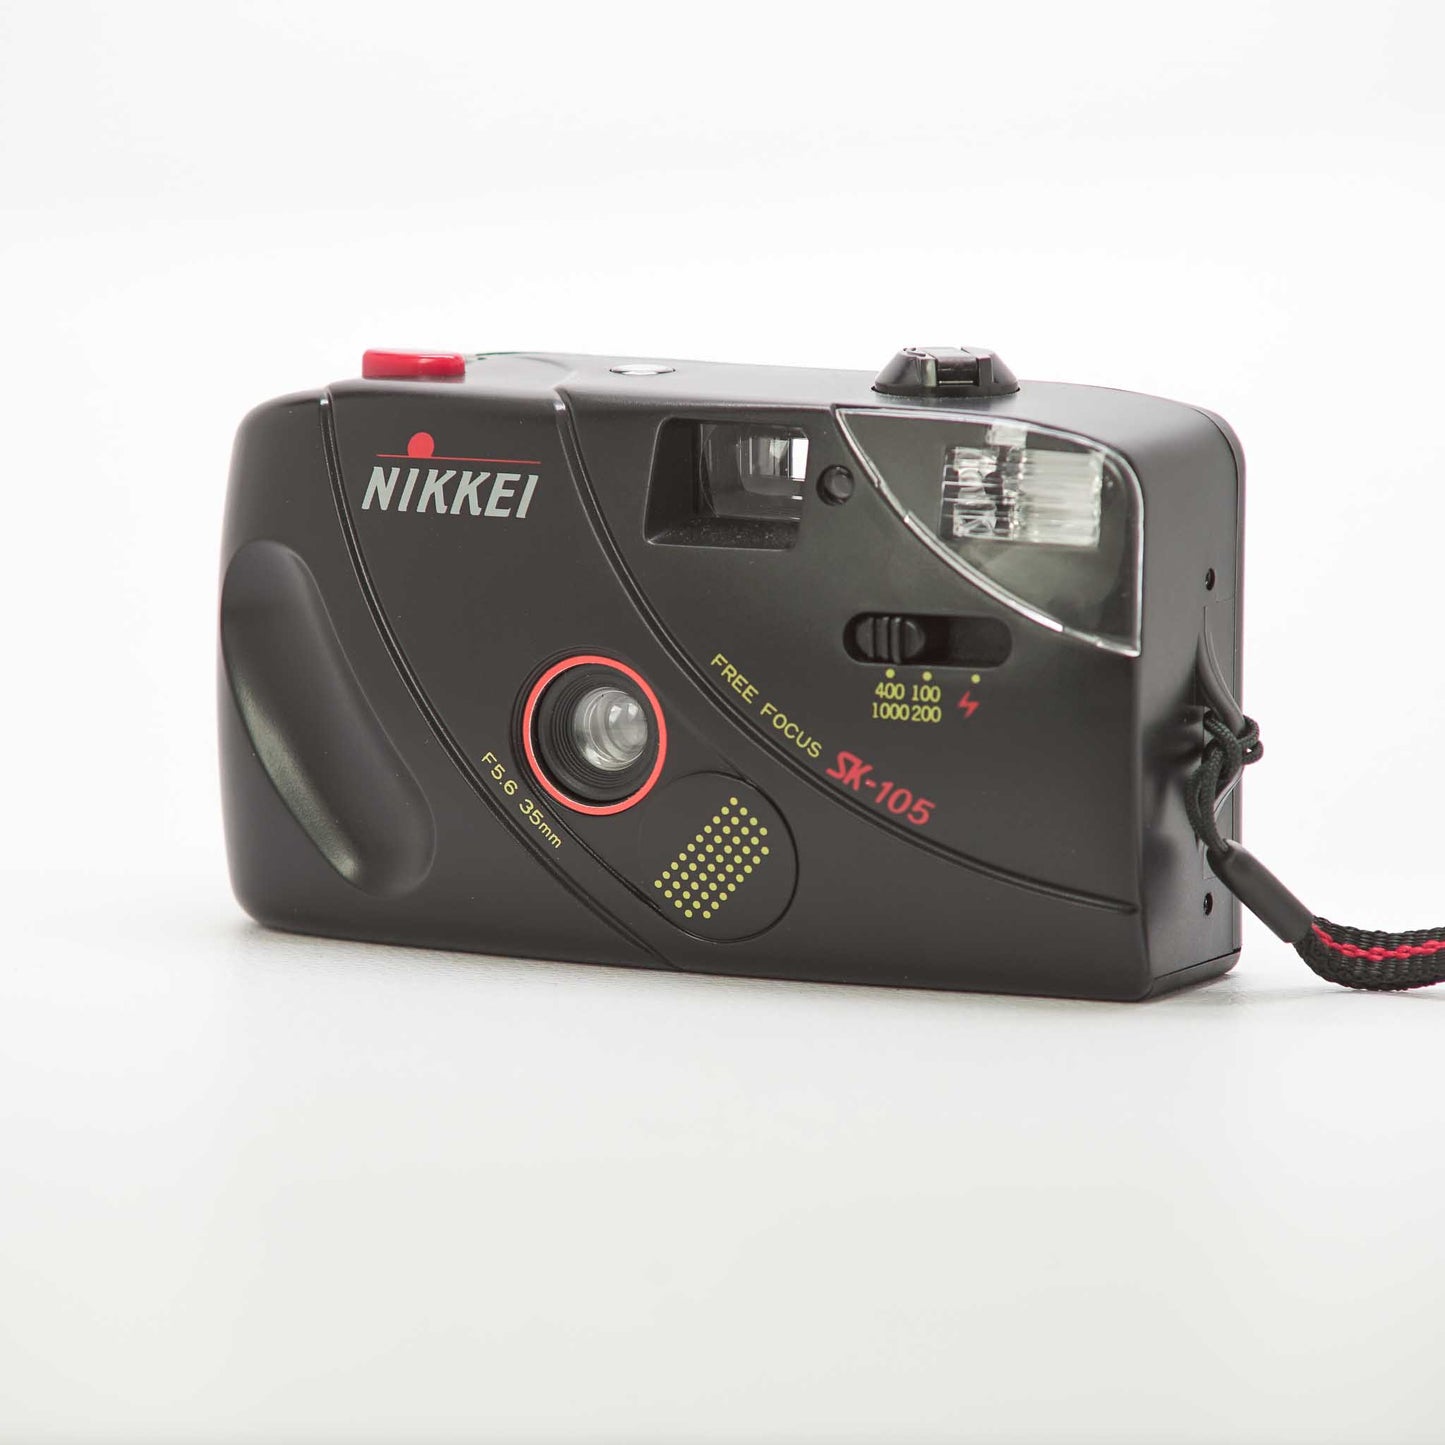 Nikkei SK-105